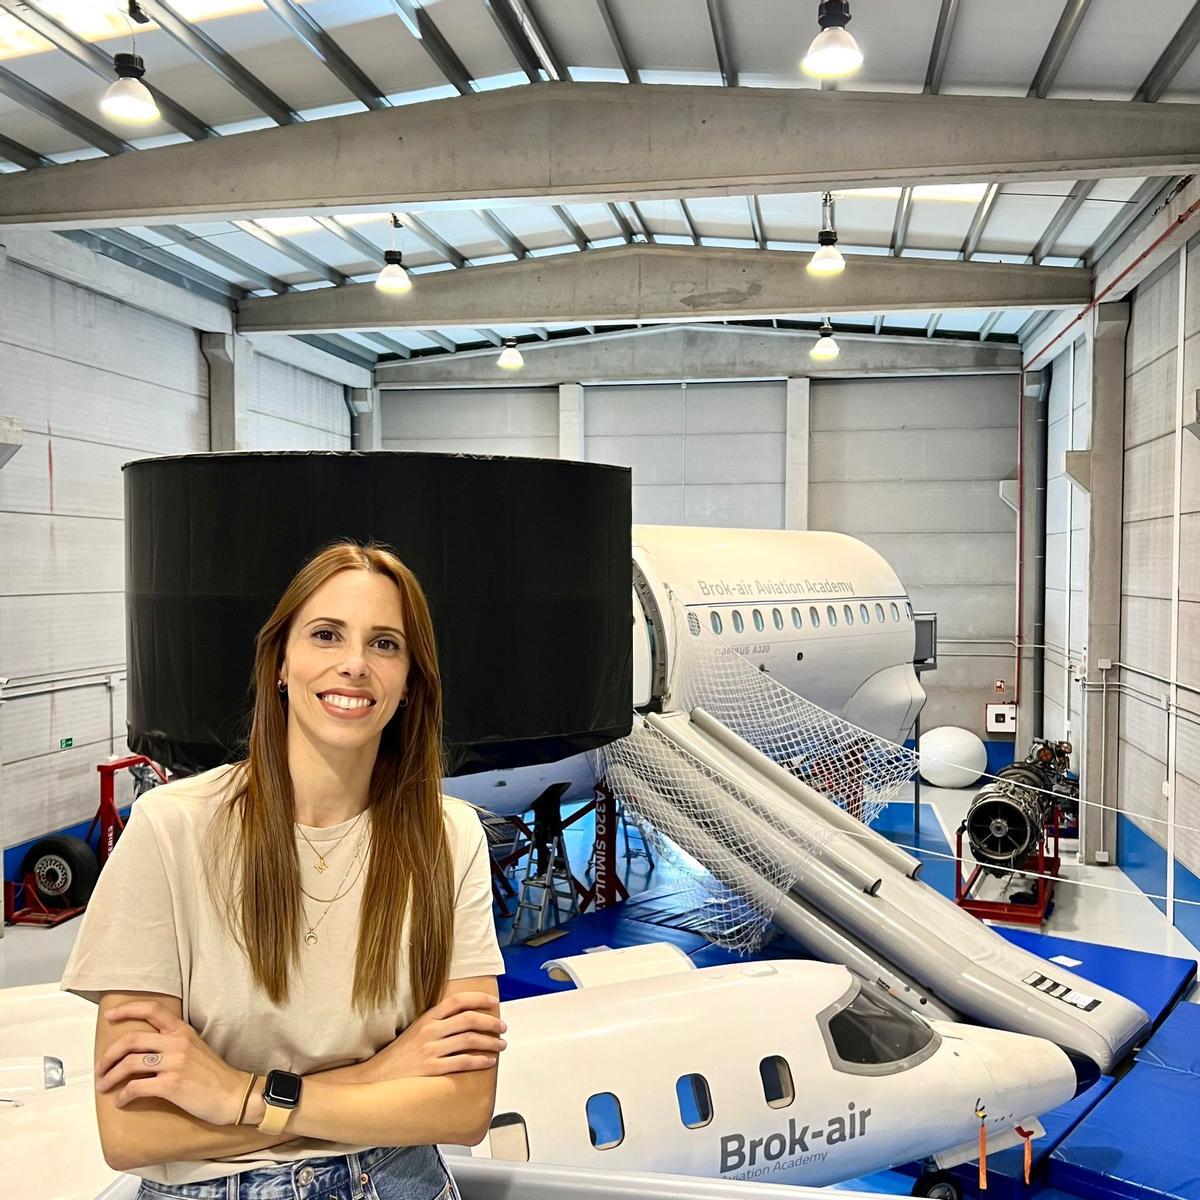 Brok-air y Canavia crean la fórmula perfecta para ofrecer enseñanza integral en el sector aeronáutico desde Canarias